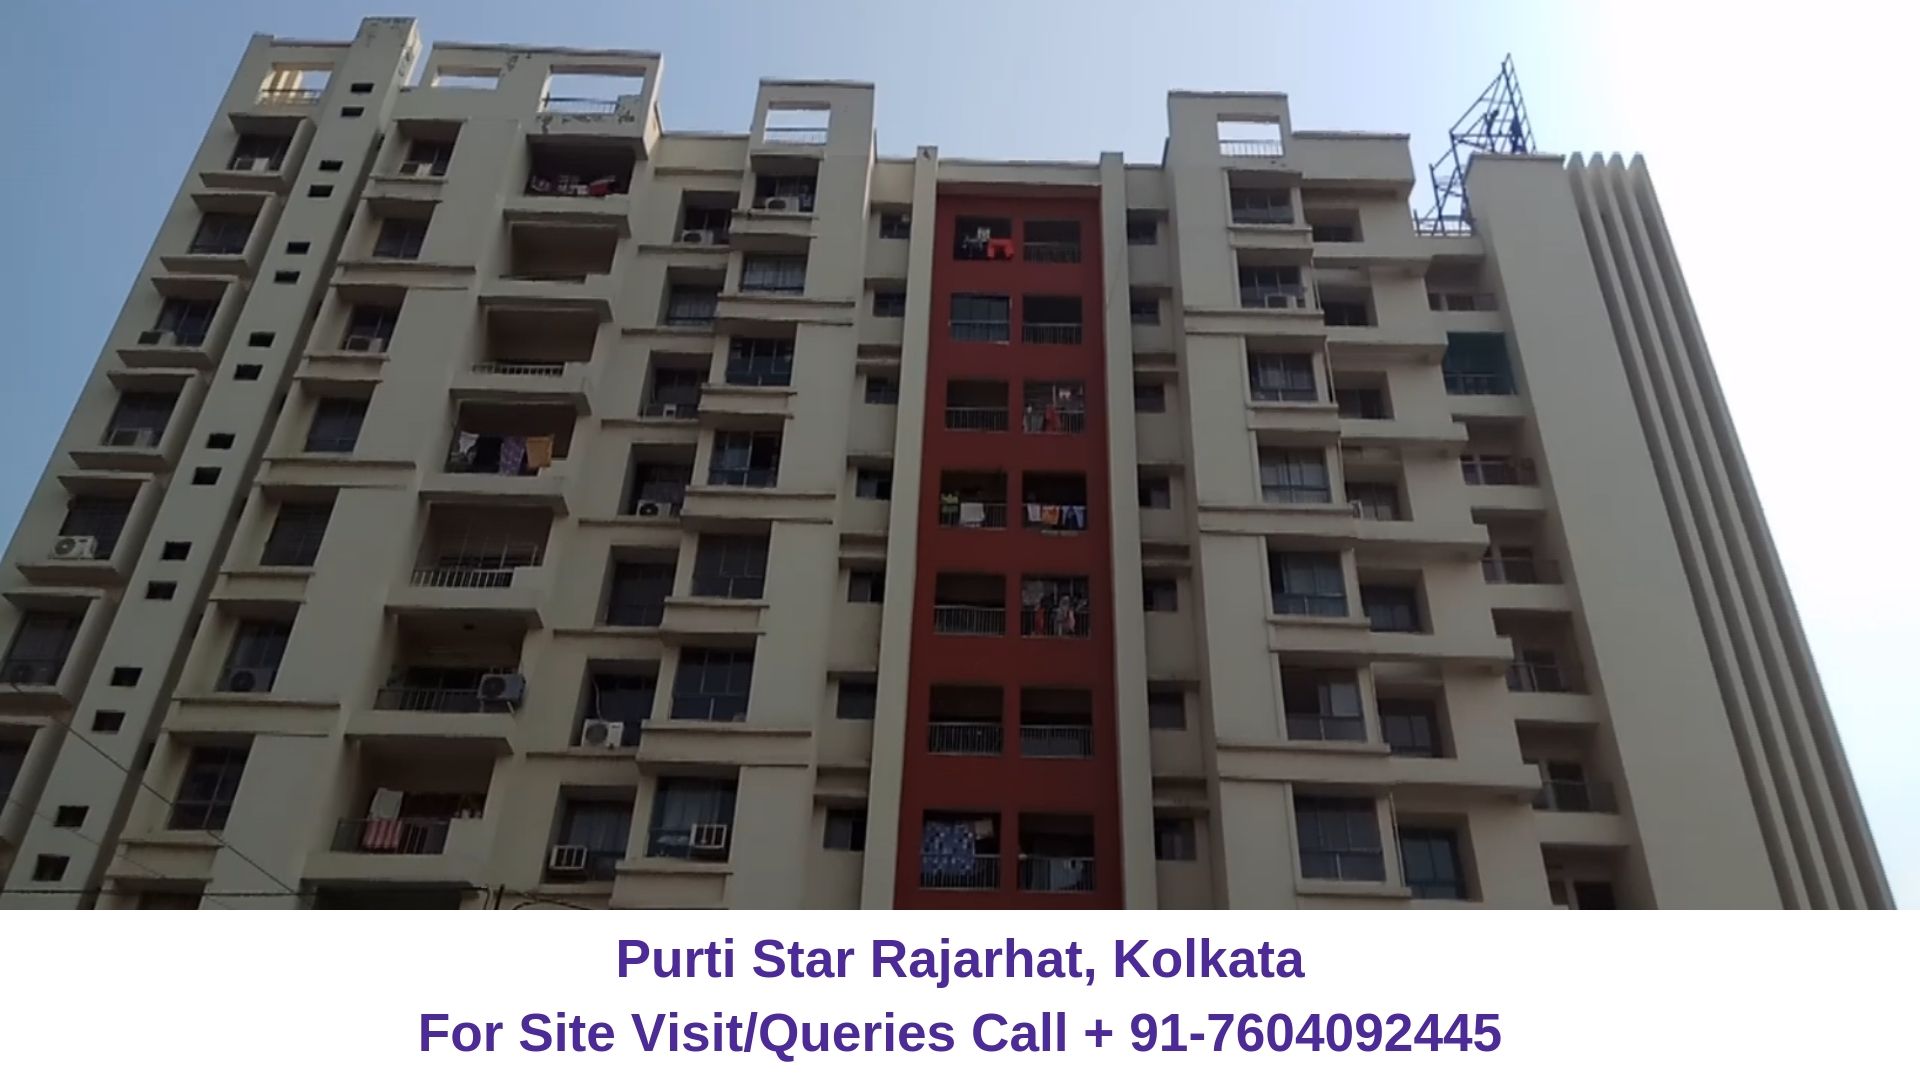 Purti Star Rajarhat, Kolkata Actual Image